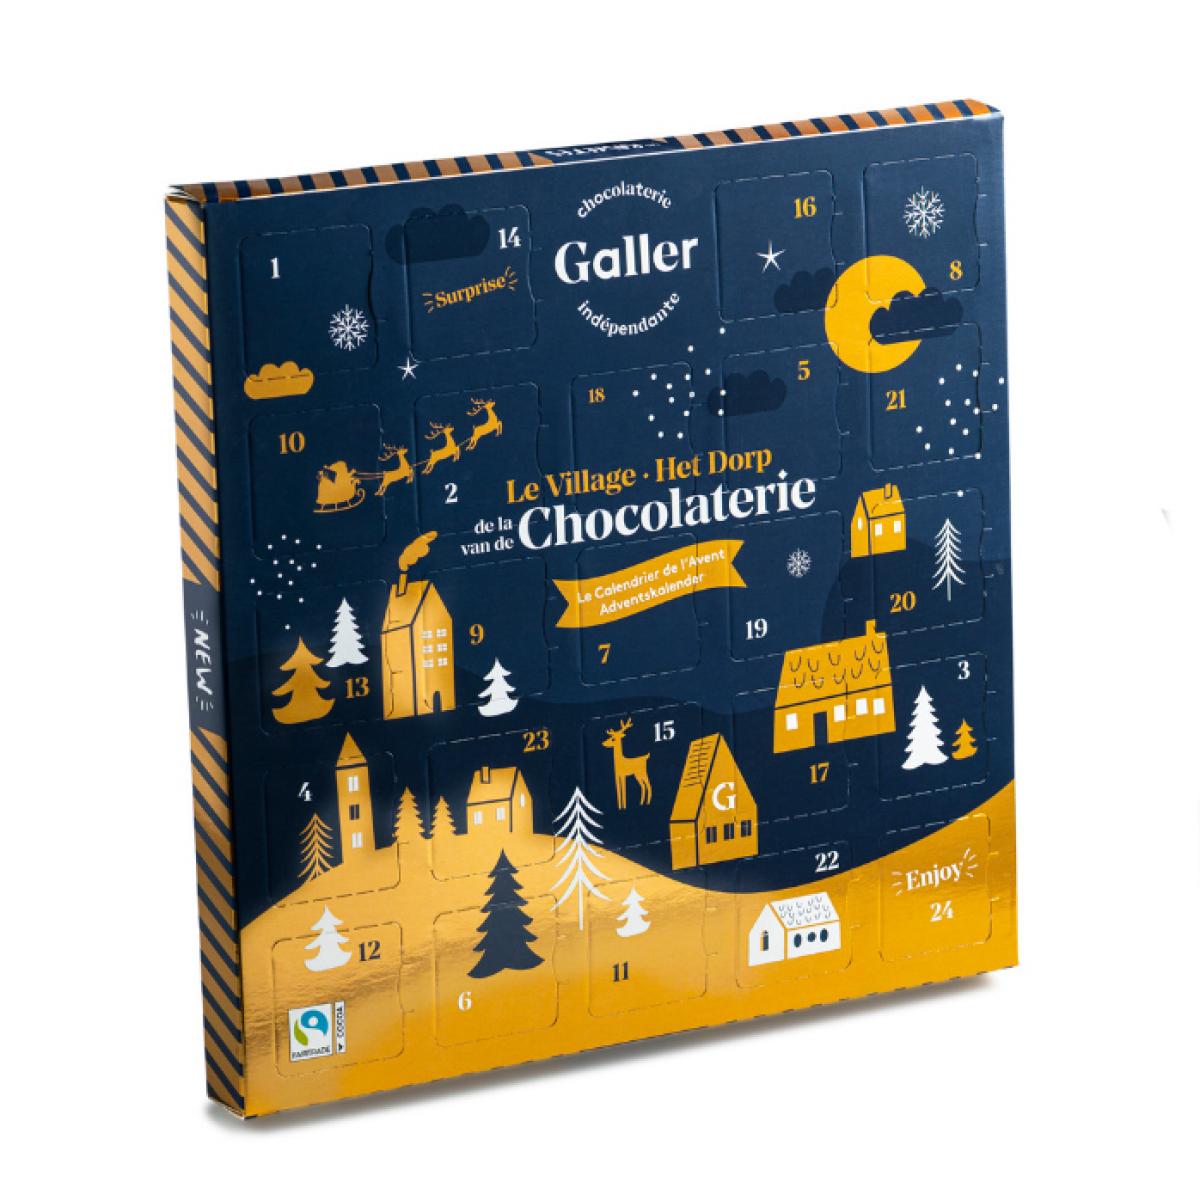 Adventskalender met Galler-chocolade